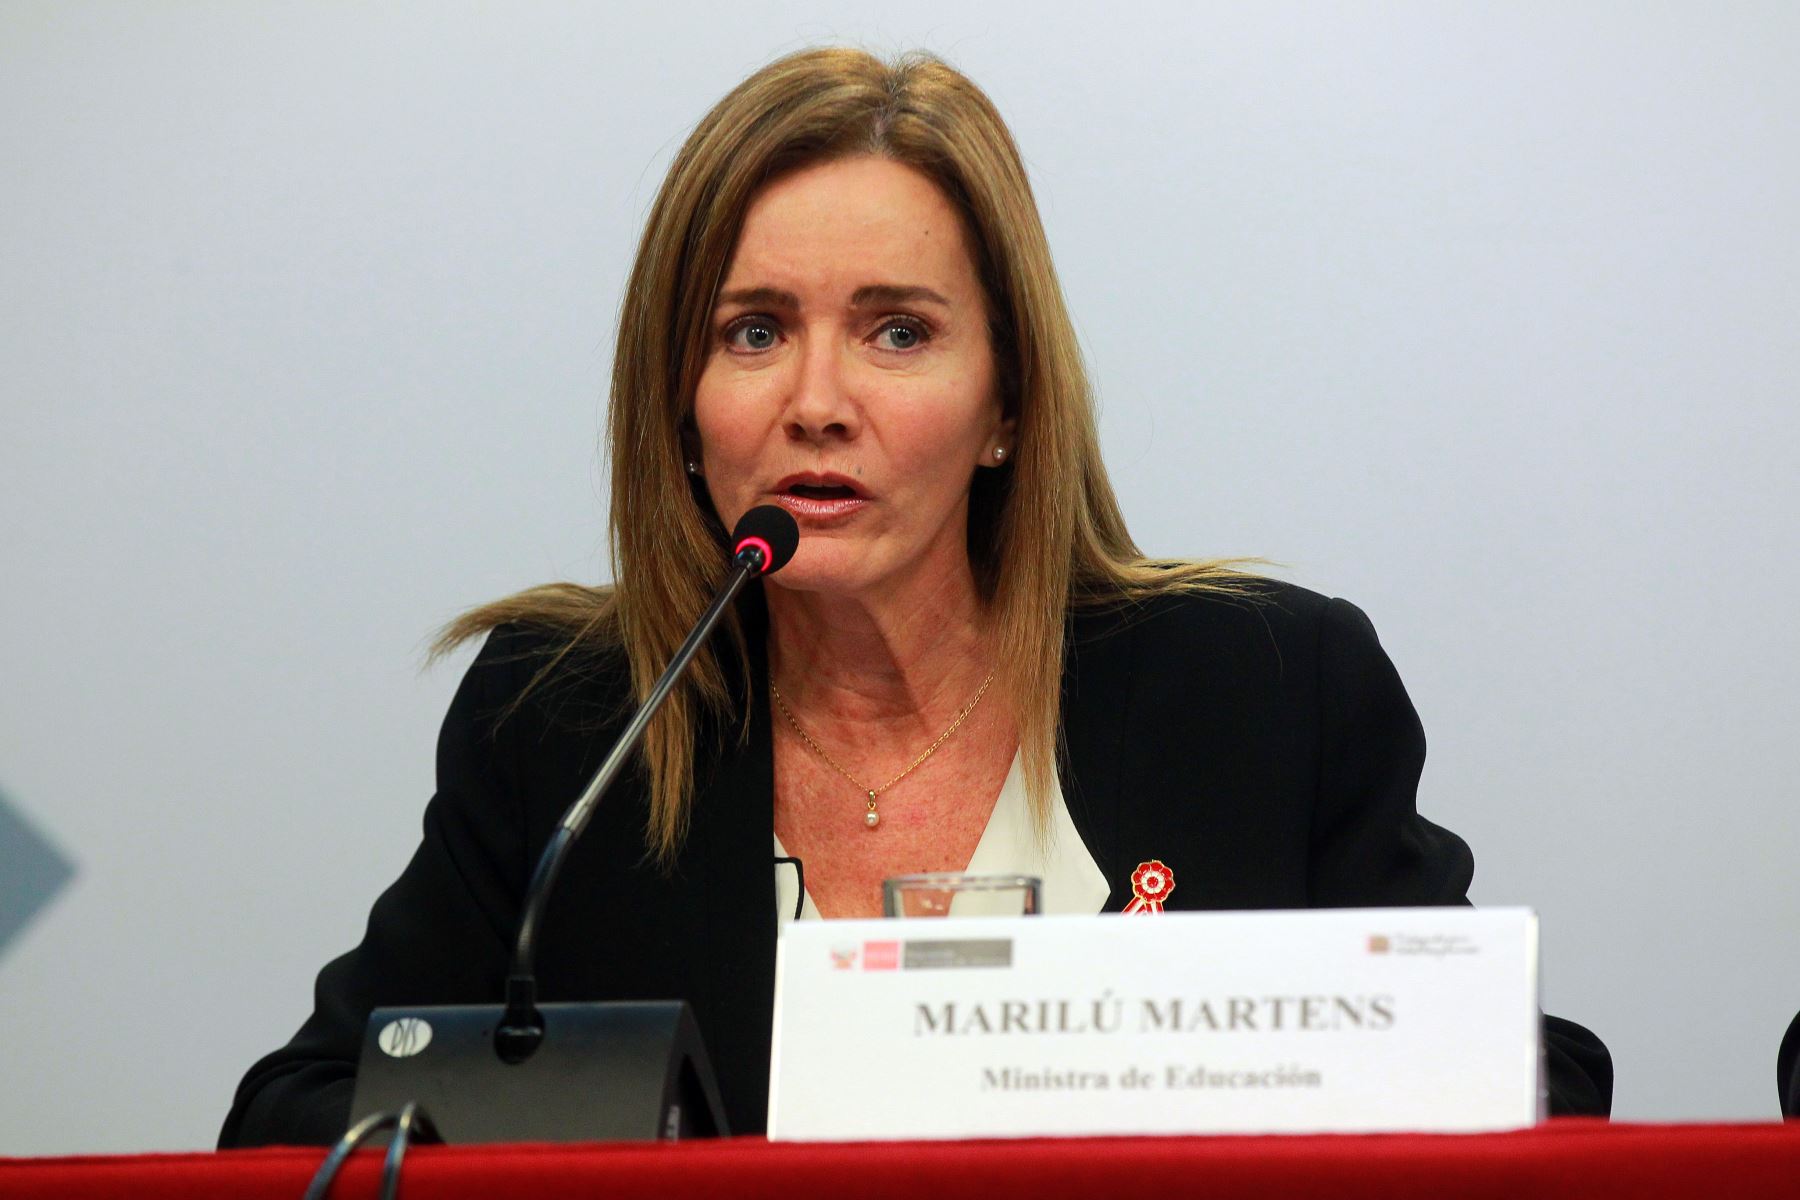 Ministra de Educación, Marilú Martens. ANDINA/Luis Iparraguirre